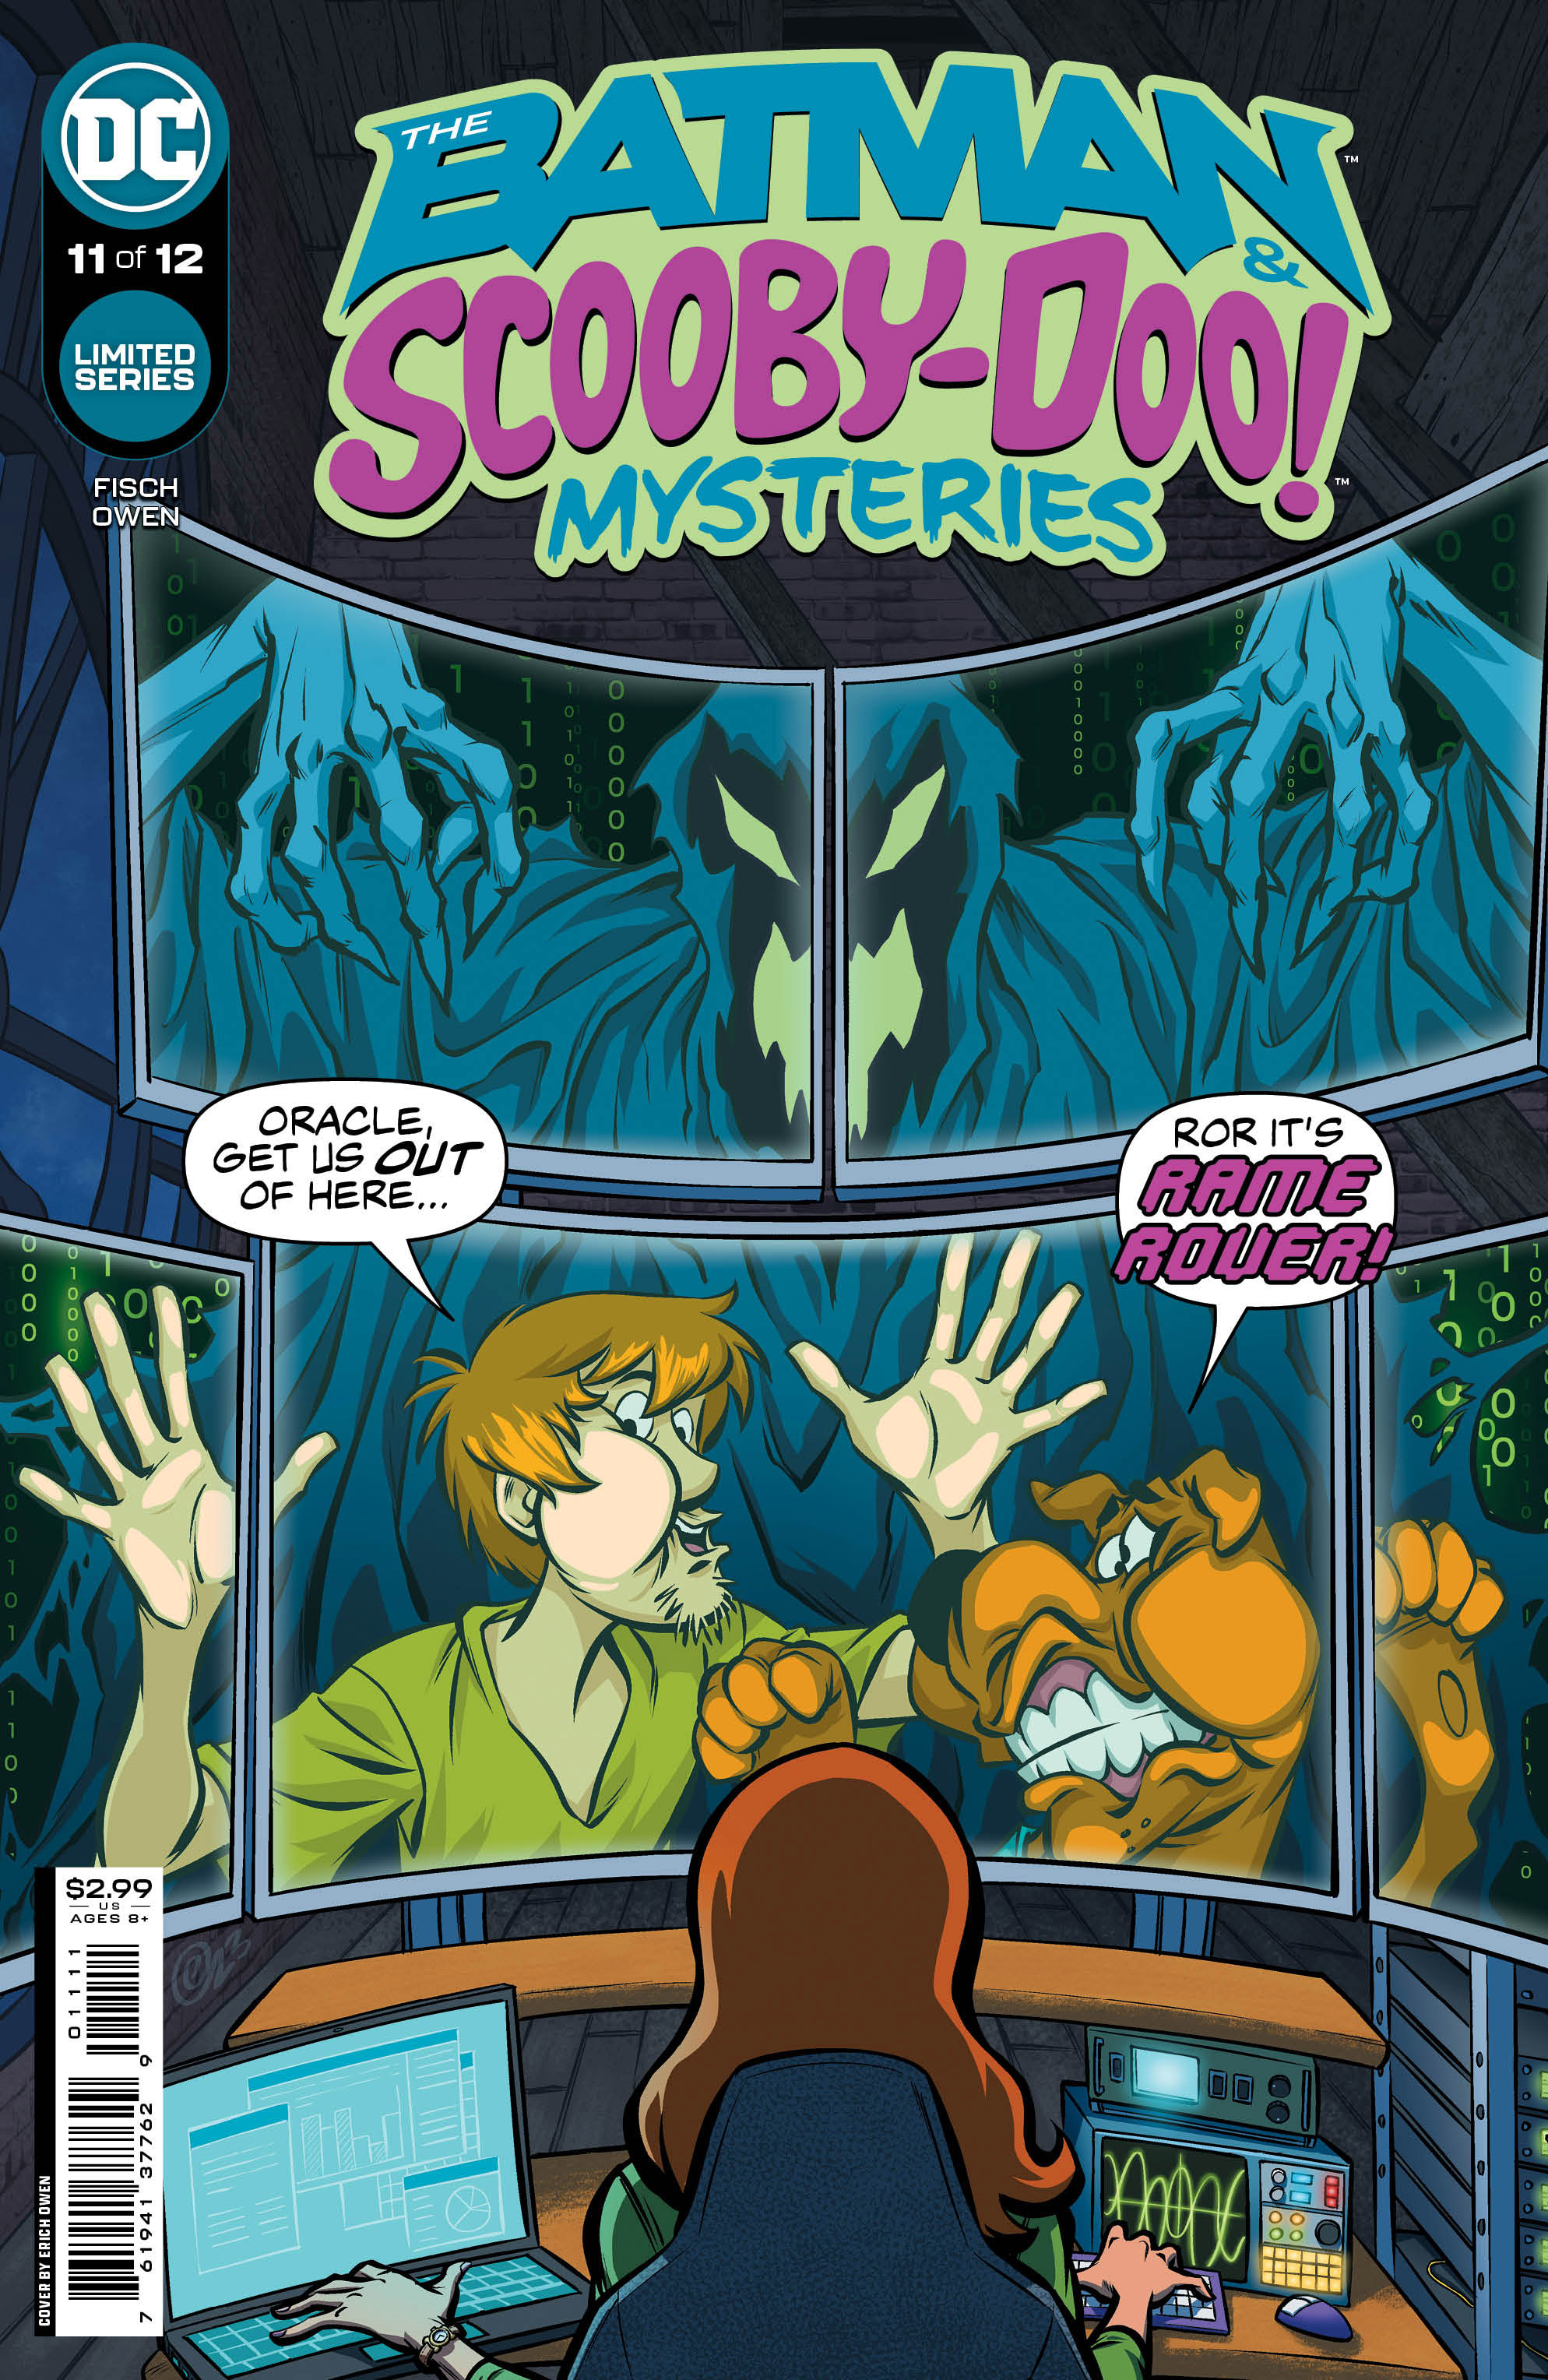 Batman & Scooby-Doo Mysteries #11